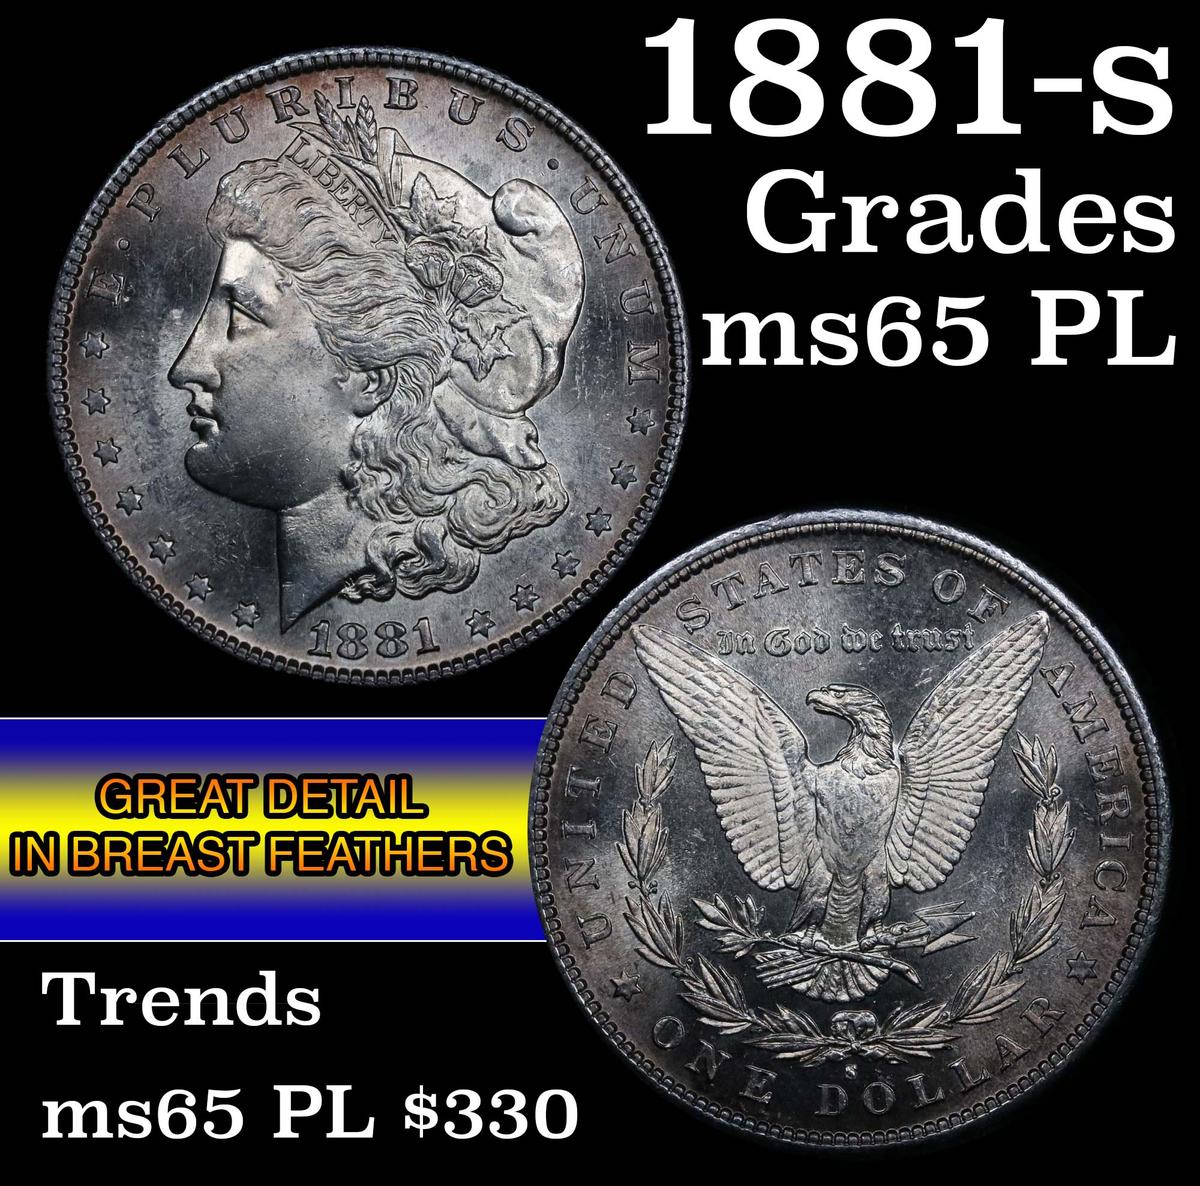 1881-s Morgan Dollar $1 Grades GEM Unc PL